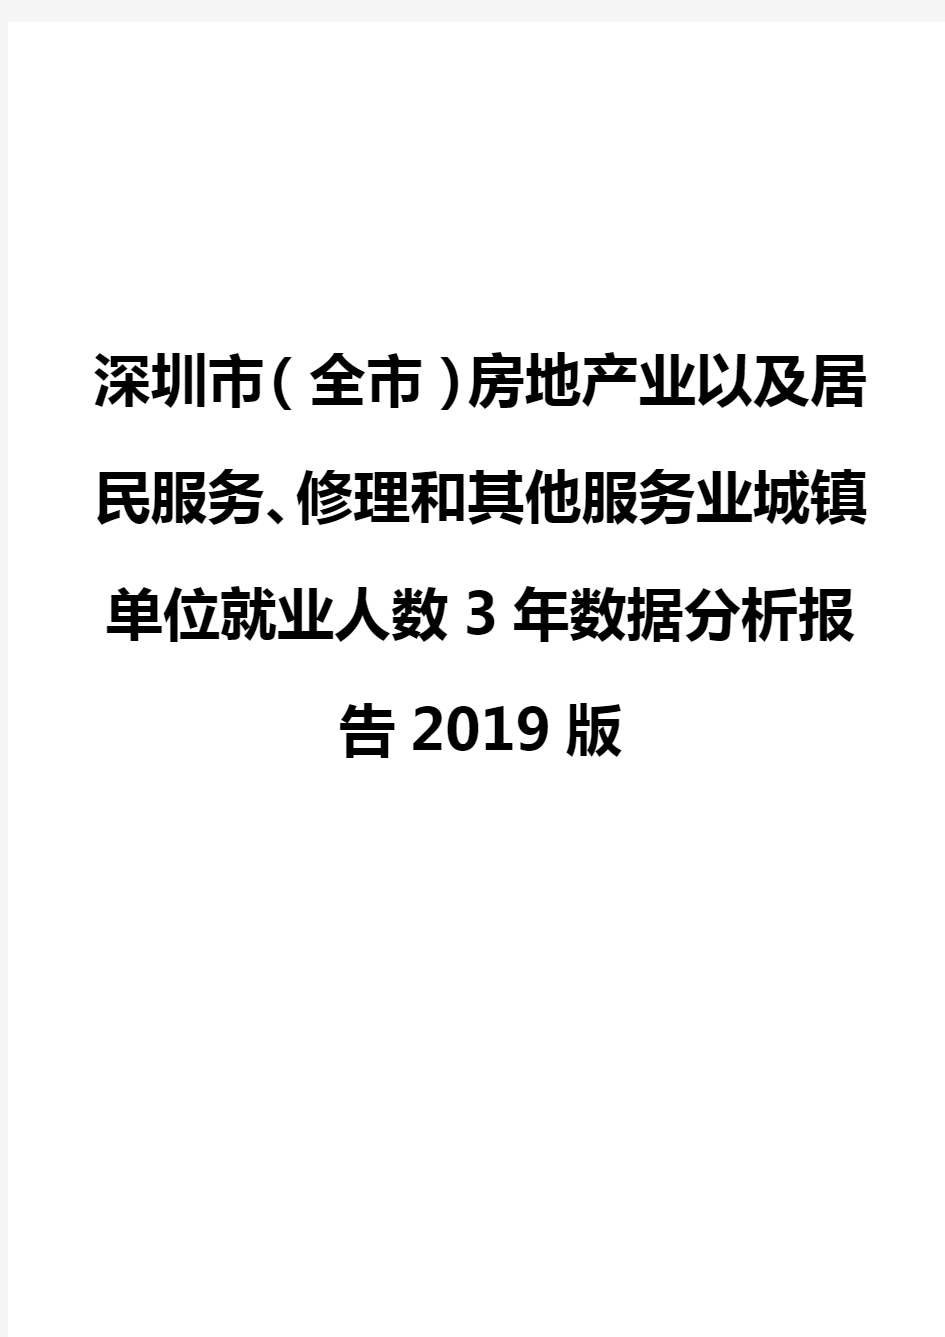 深圳市(全市)房地产业以及居民服务、修理和其他服务业城镇单位就业人数3年数据分析报告2019版